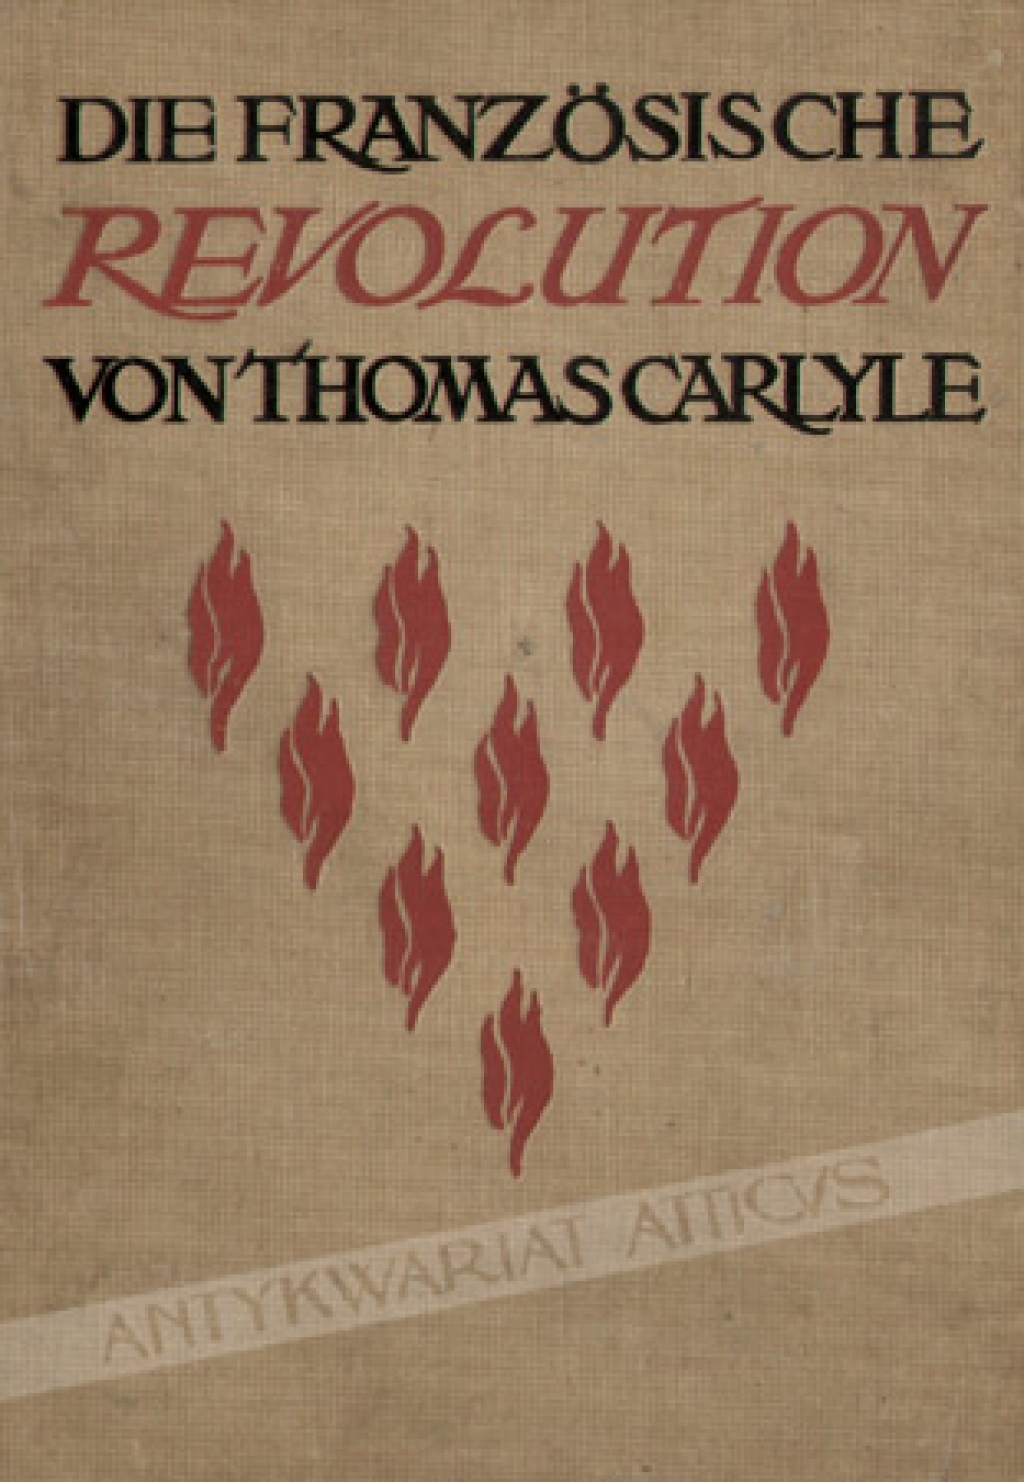 Die Französische Revolution von Thomas Carlyle. Neue illustrierte Ausgabe herausgegeben von Theodor Rehtwisch.